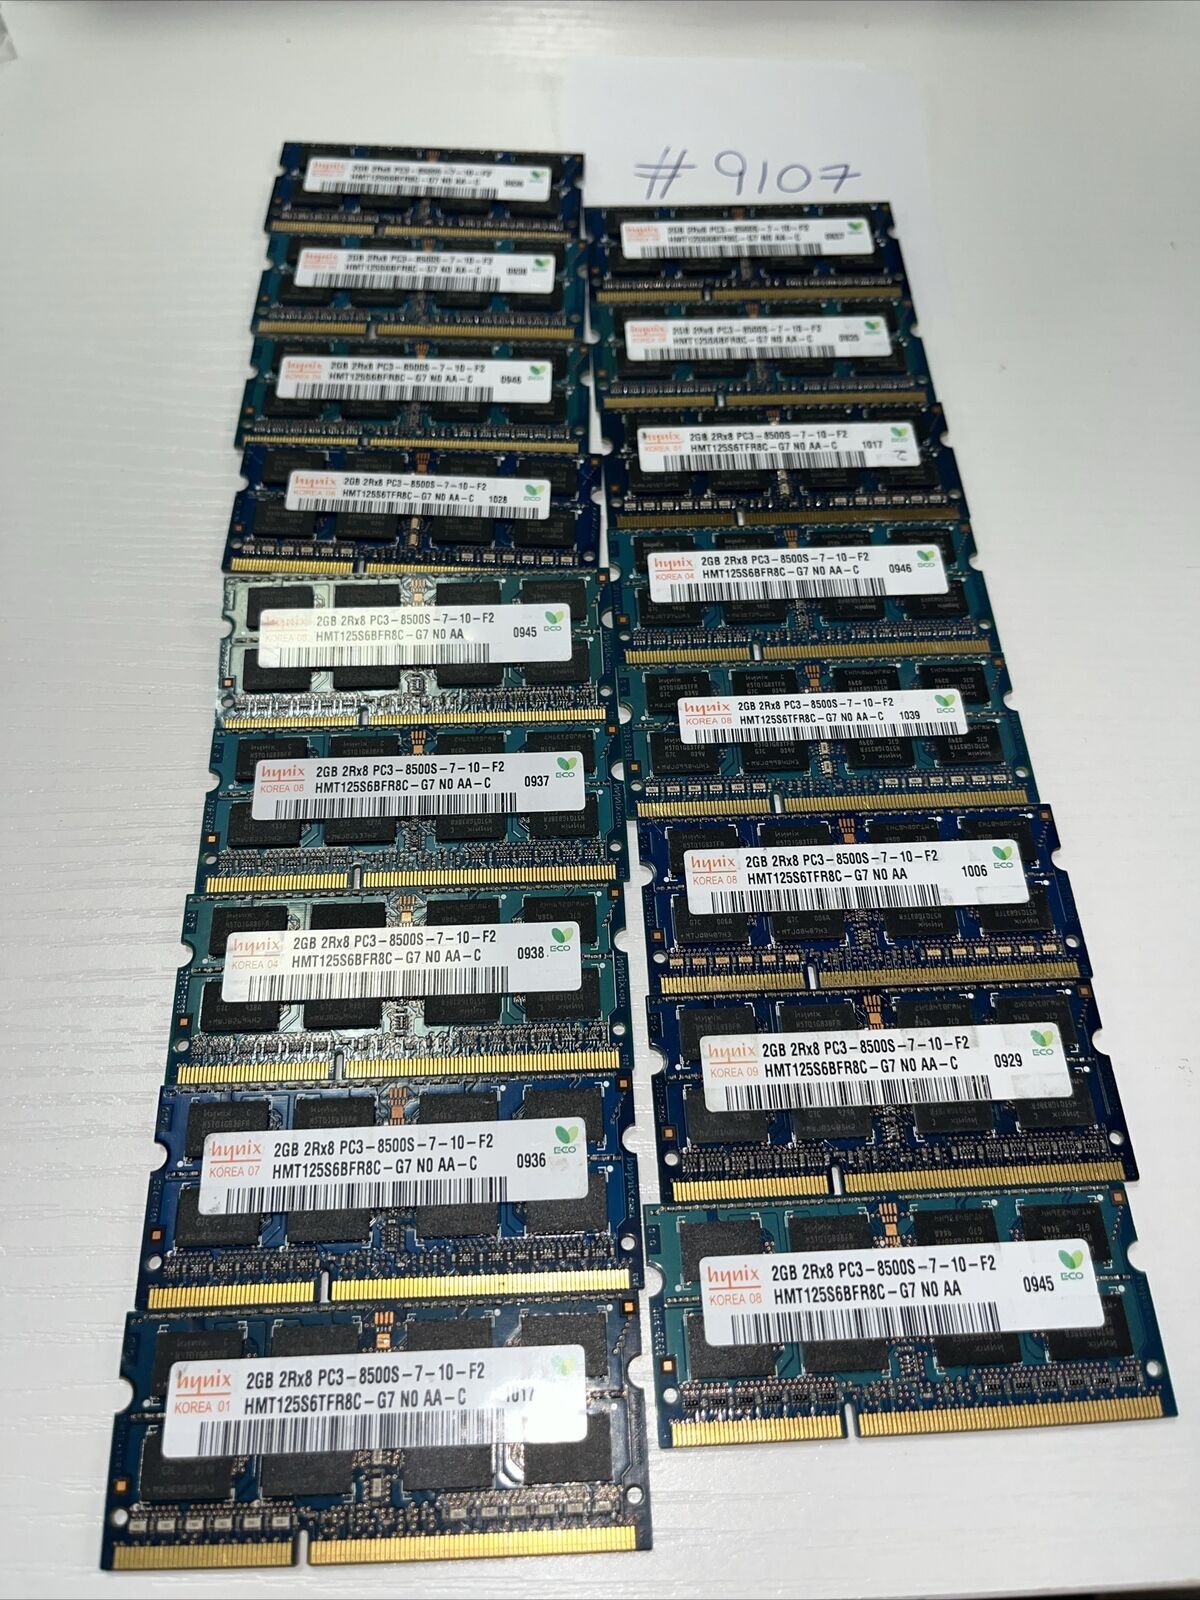 (LOT OF 17) Hynix 2GB 2Rx8 PC3-8500S-7-10-F2 DDR3 RAM Memory HMT125S6BFR8C-G7